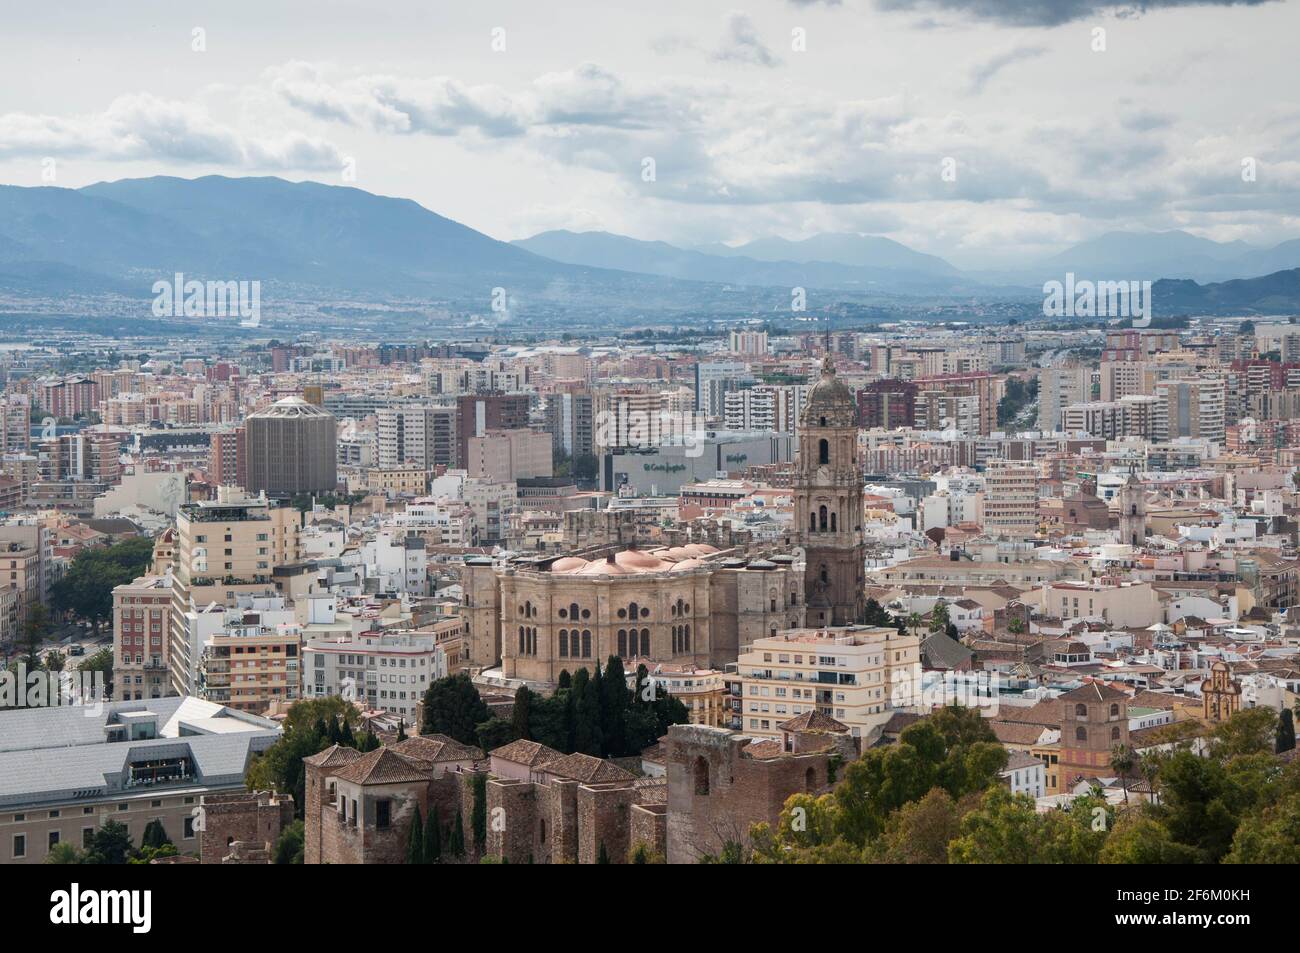 A bird's eye view over Malaga, Spain Stock Photo